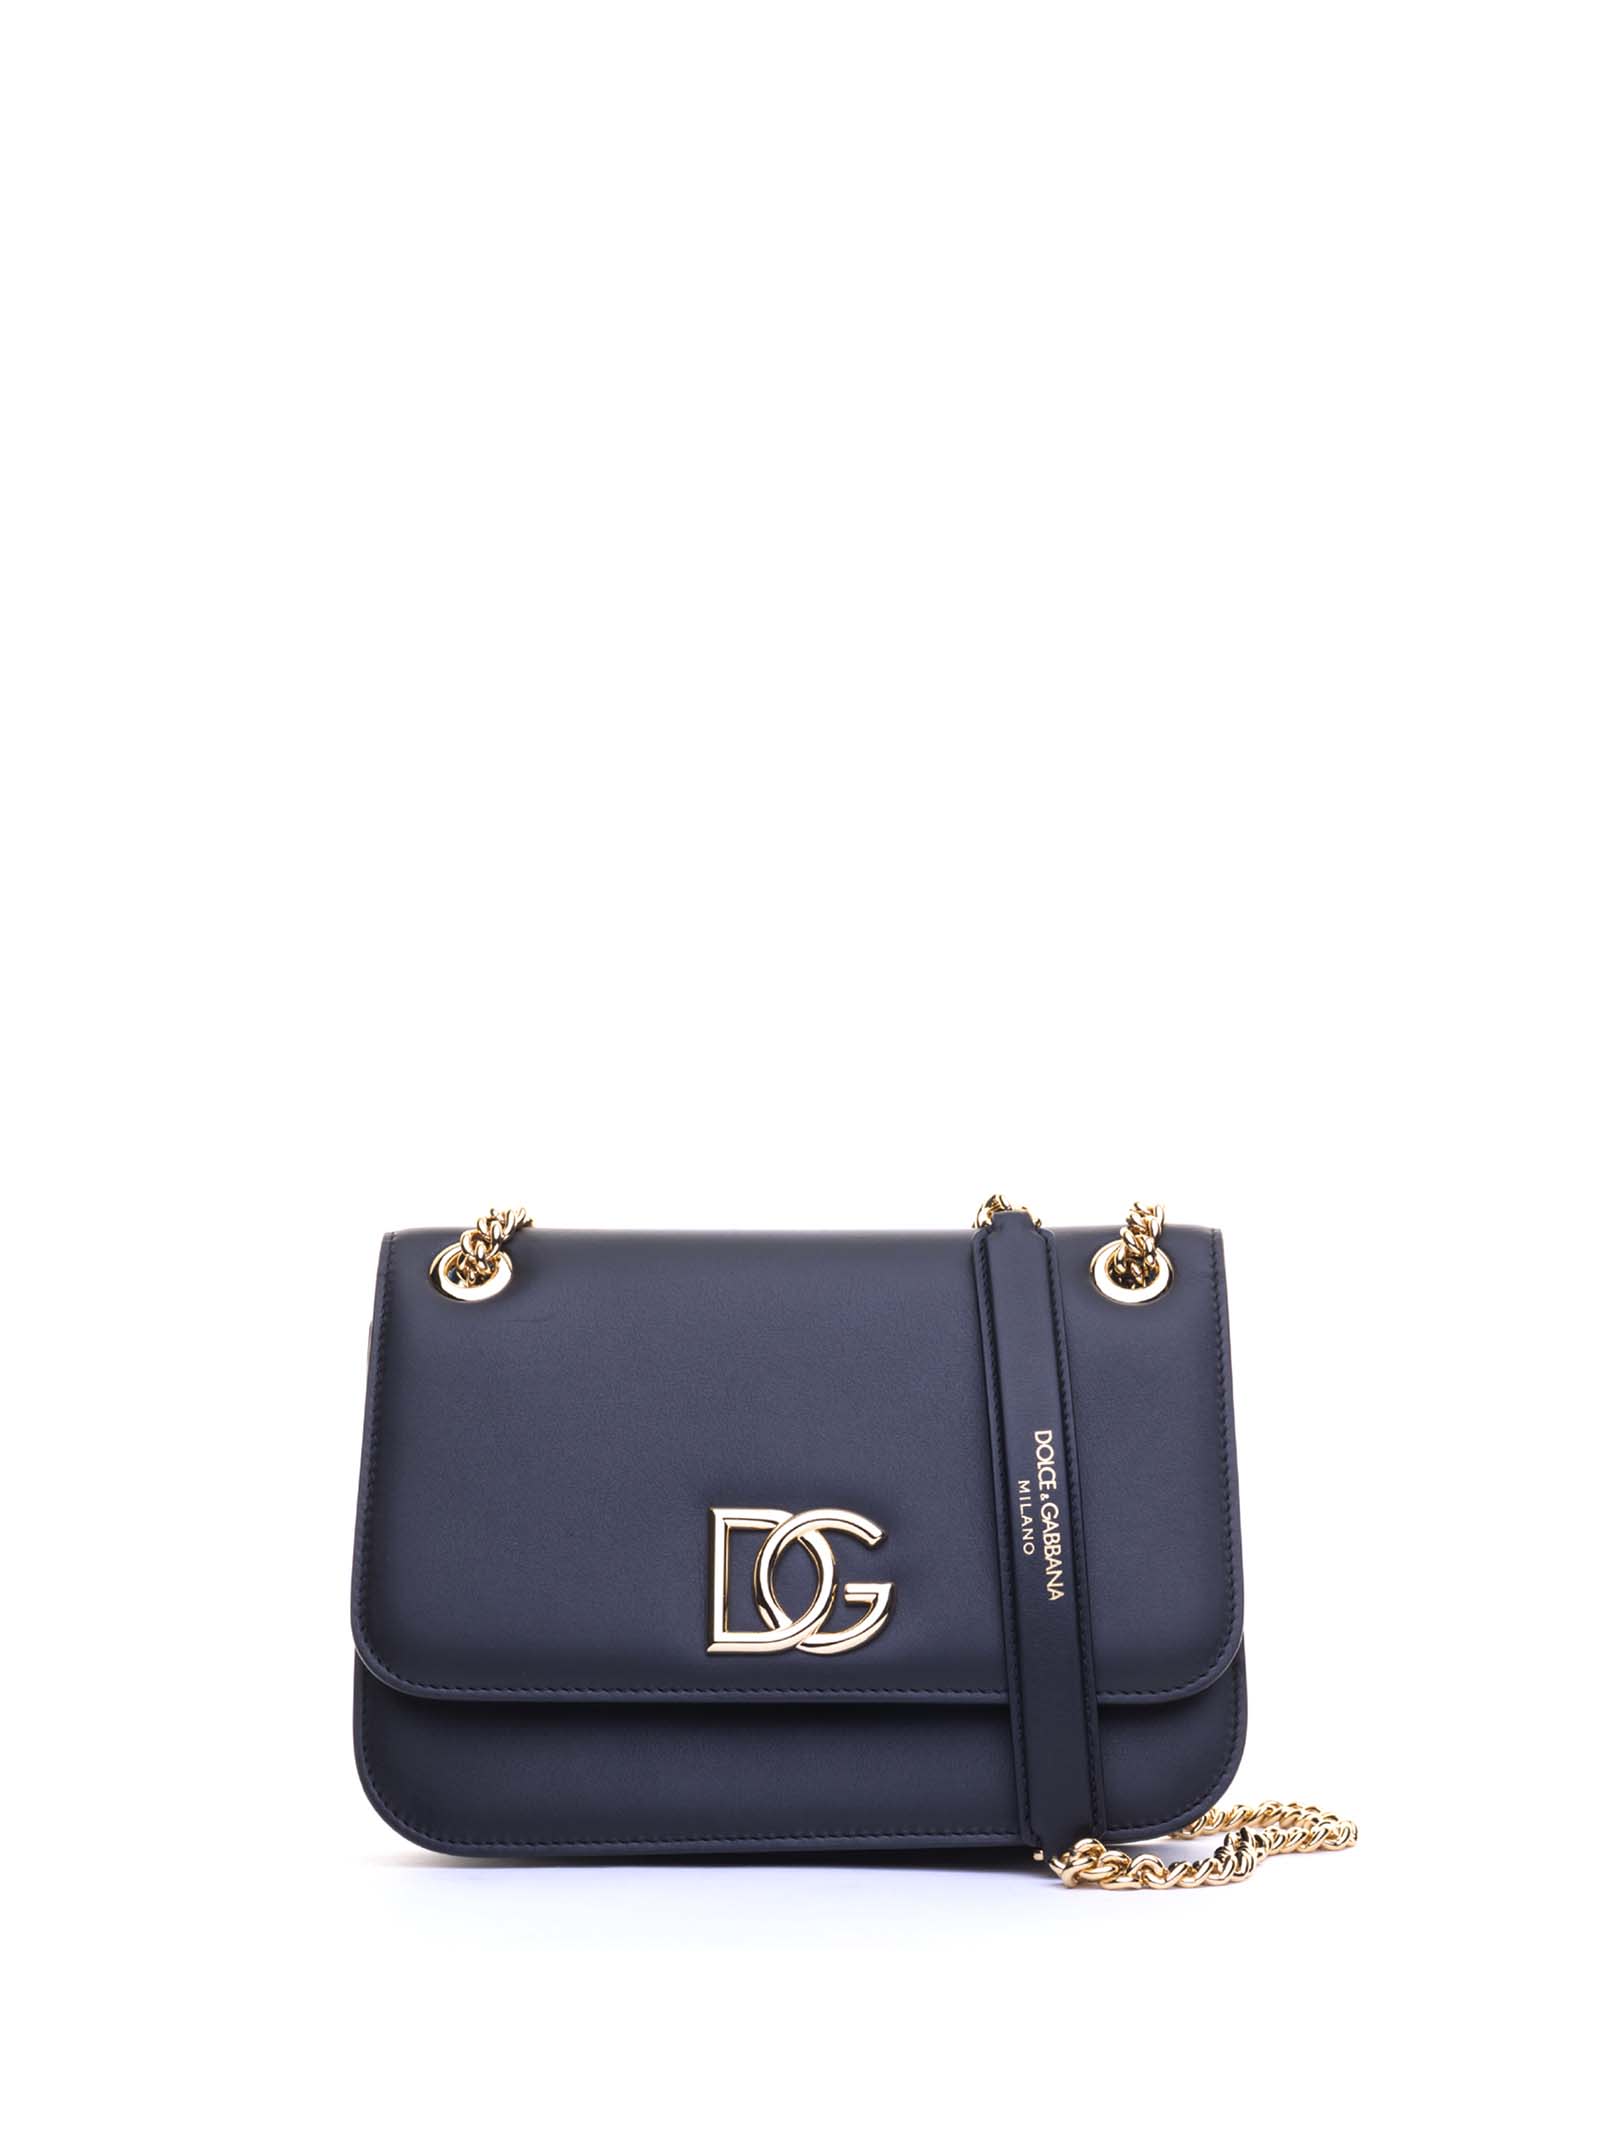 Dolce & Gabbana Dg Millennials Shoulder Bag In Nero